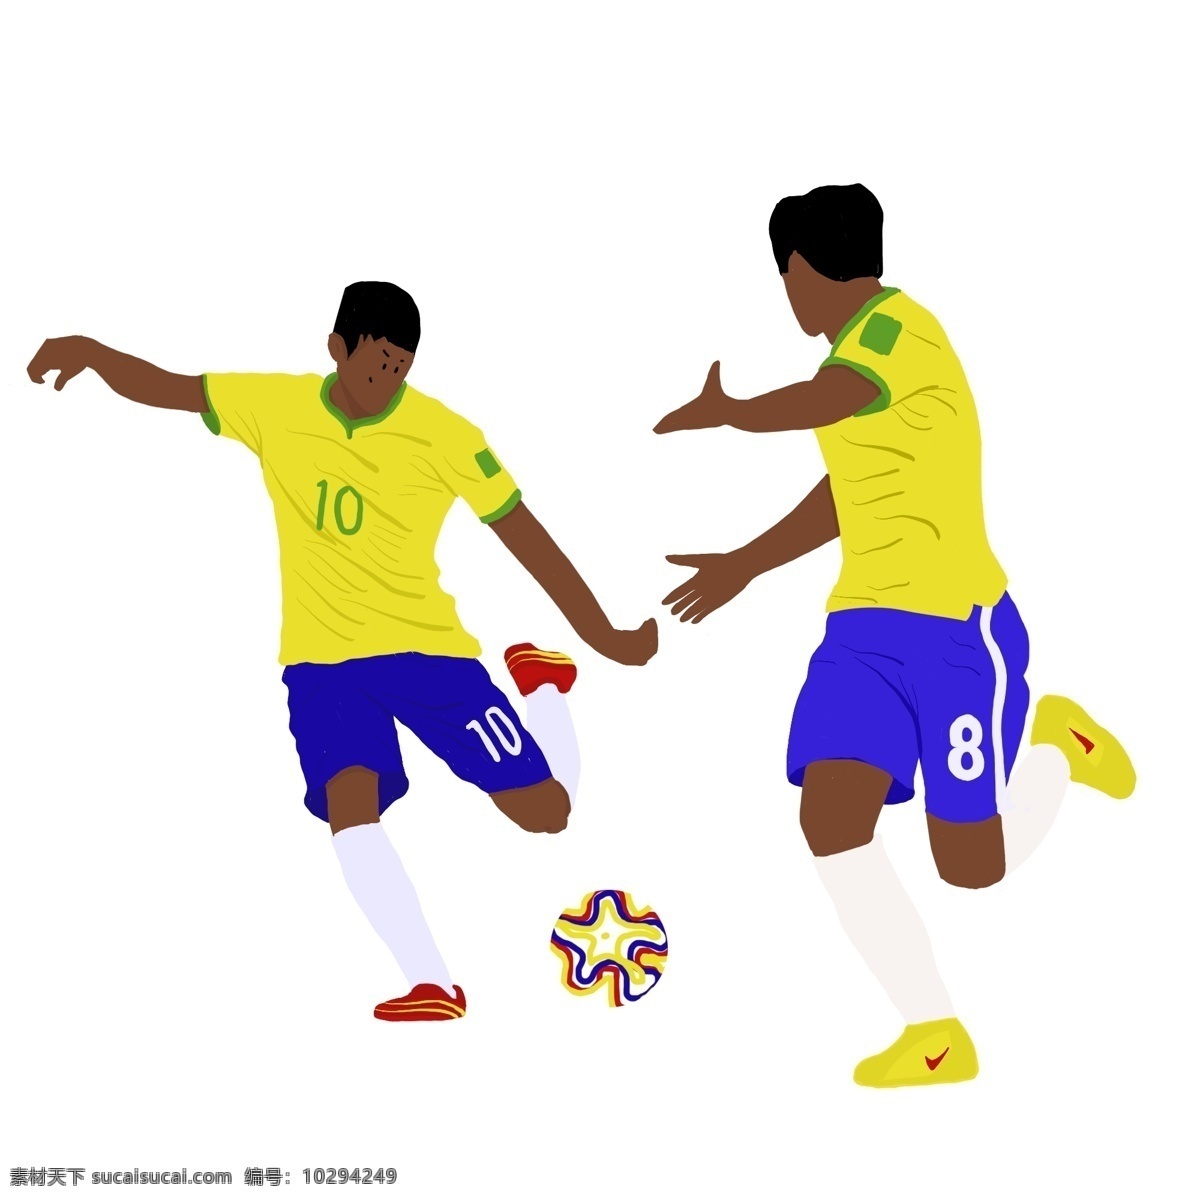 世界杯 球员 踢球 卡通 运动 淘宝 天猫 京东 海报 手绘 男生 足球 比赛 促销 黄色